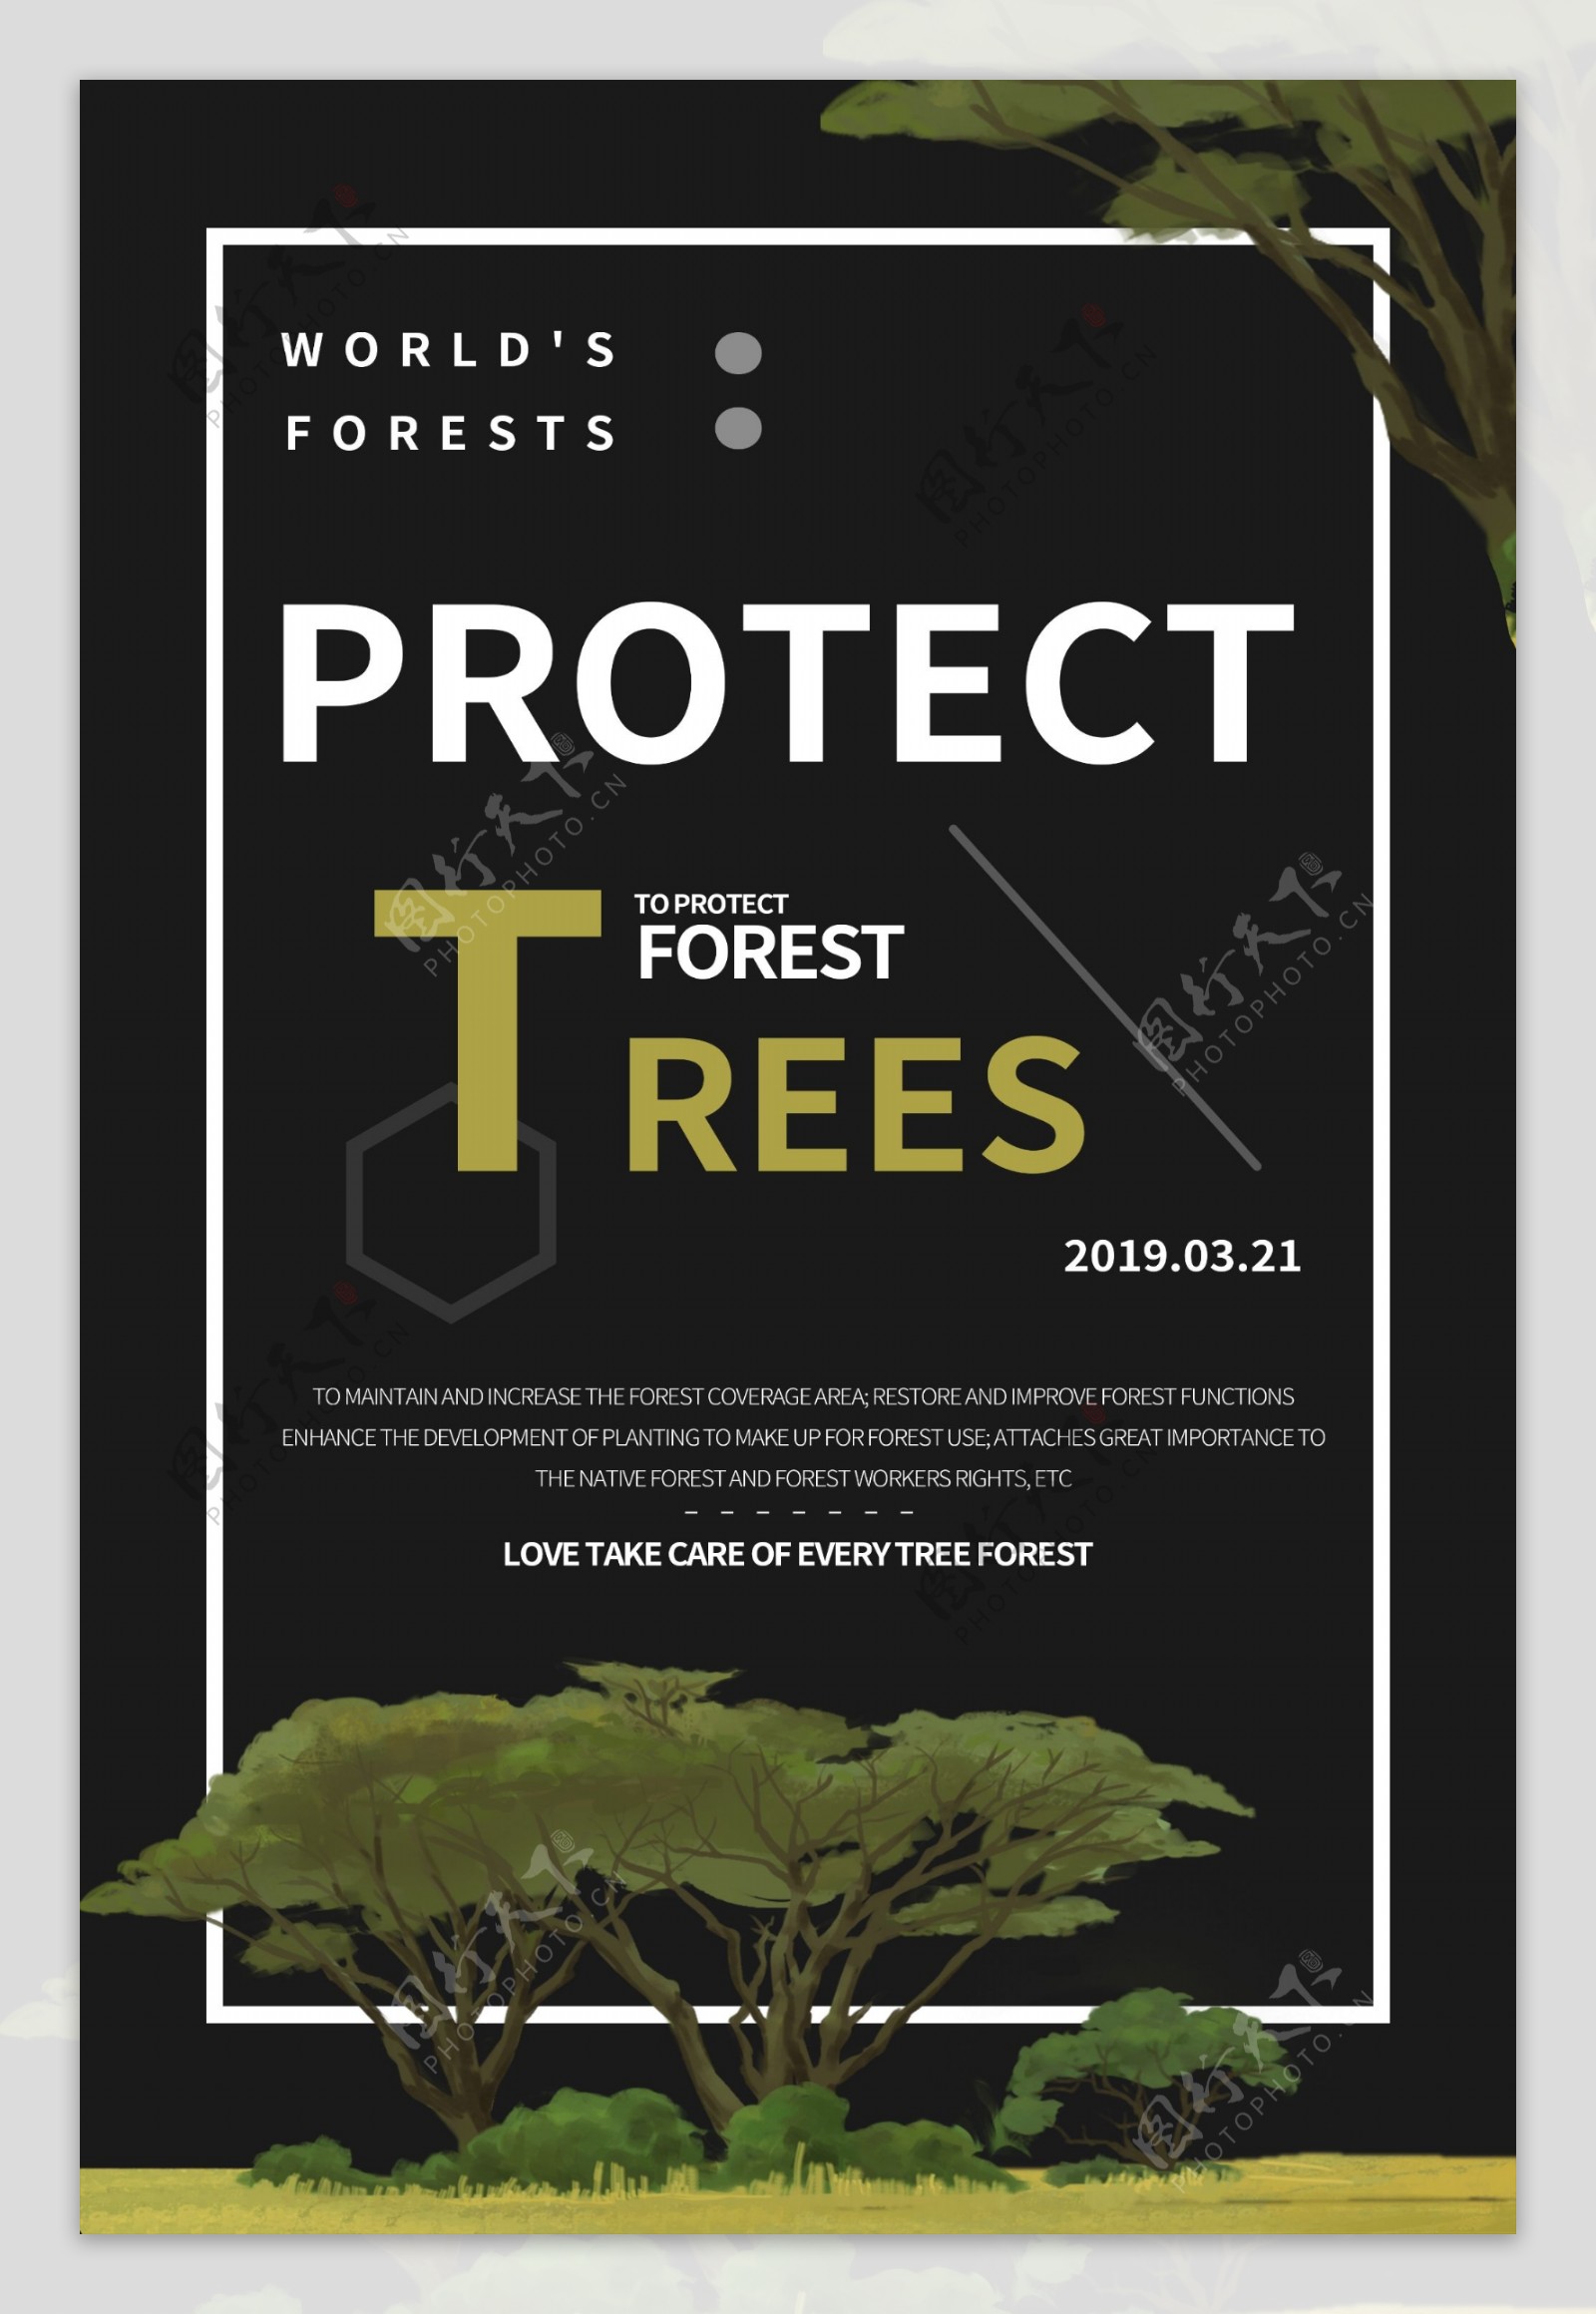 世界森林日纯英文宣传海报